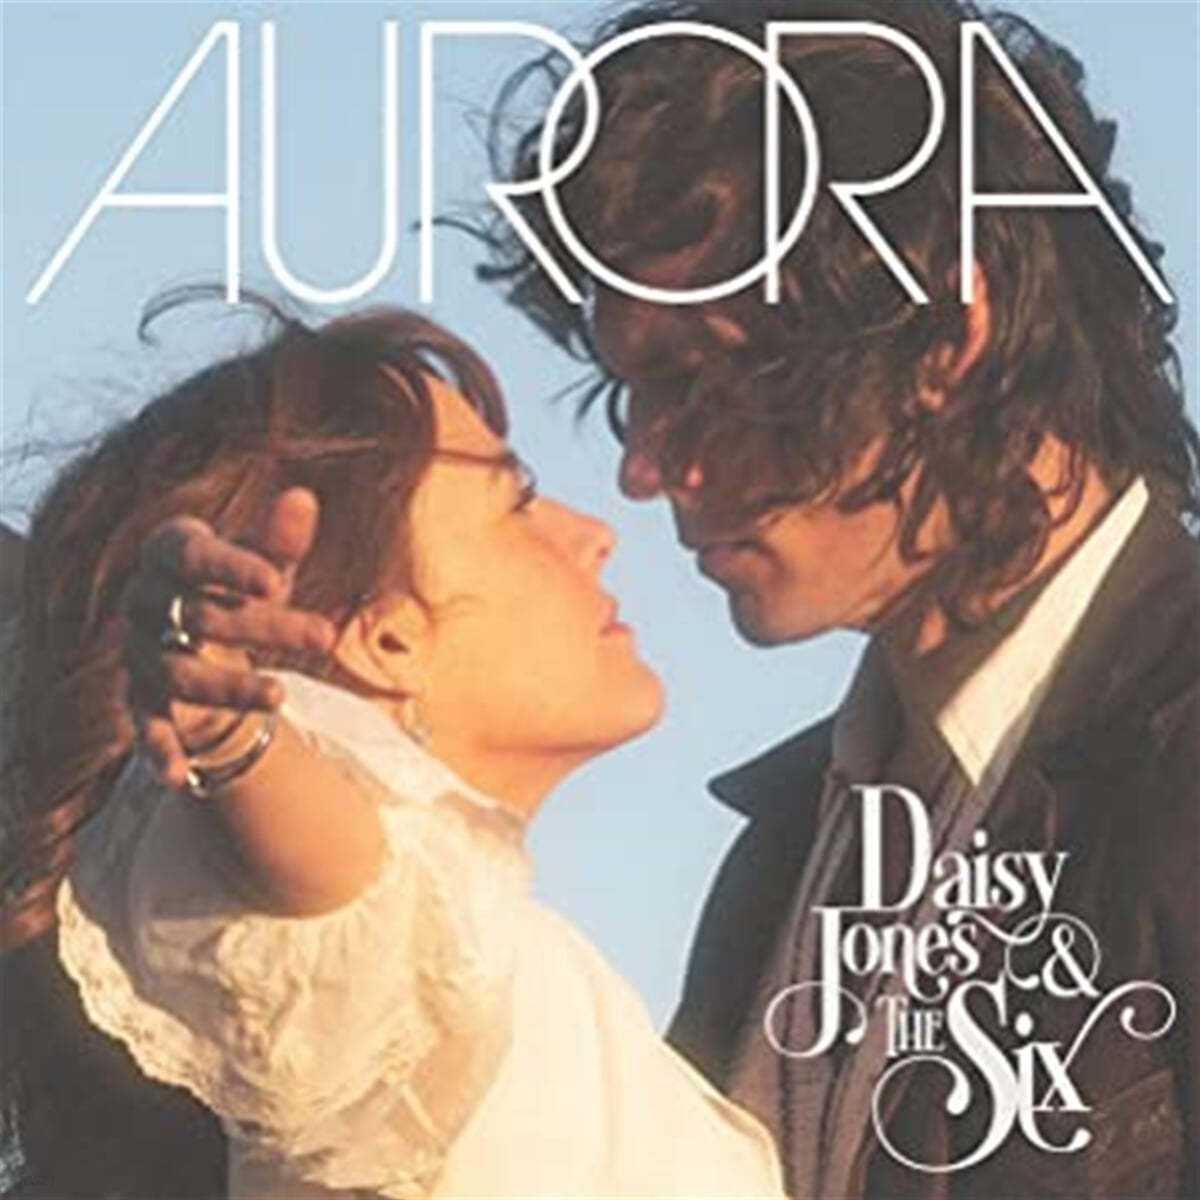 Daisy Jones &amp; The Six (데이지 존슨 앤 더 식스) - AURORA